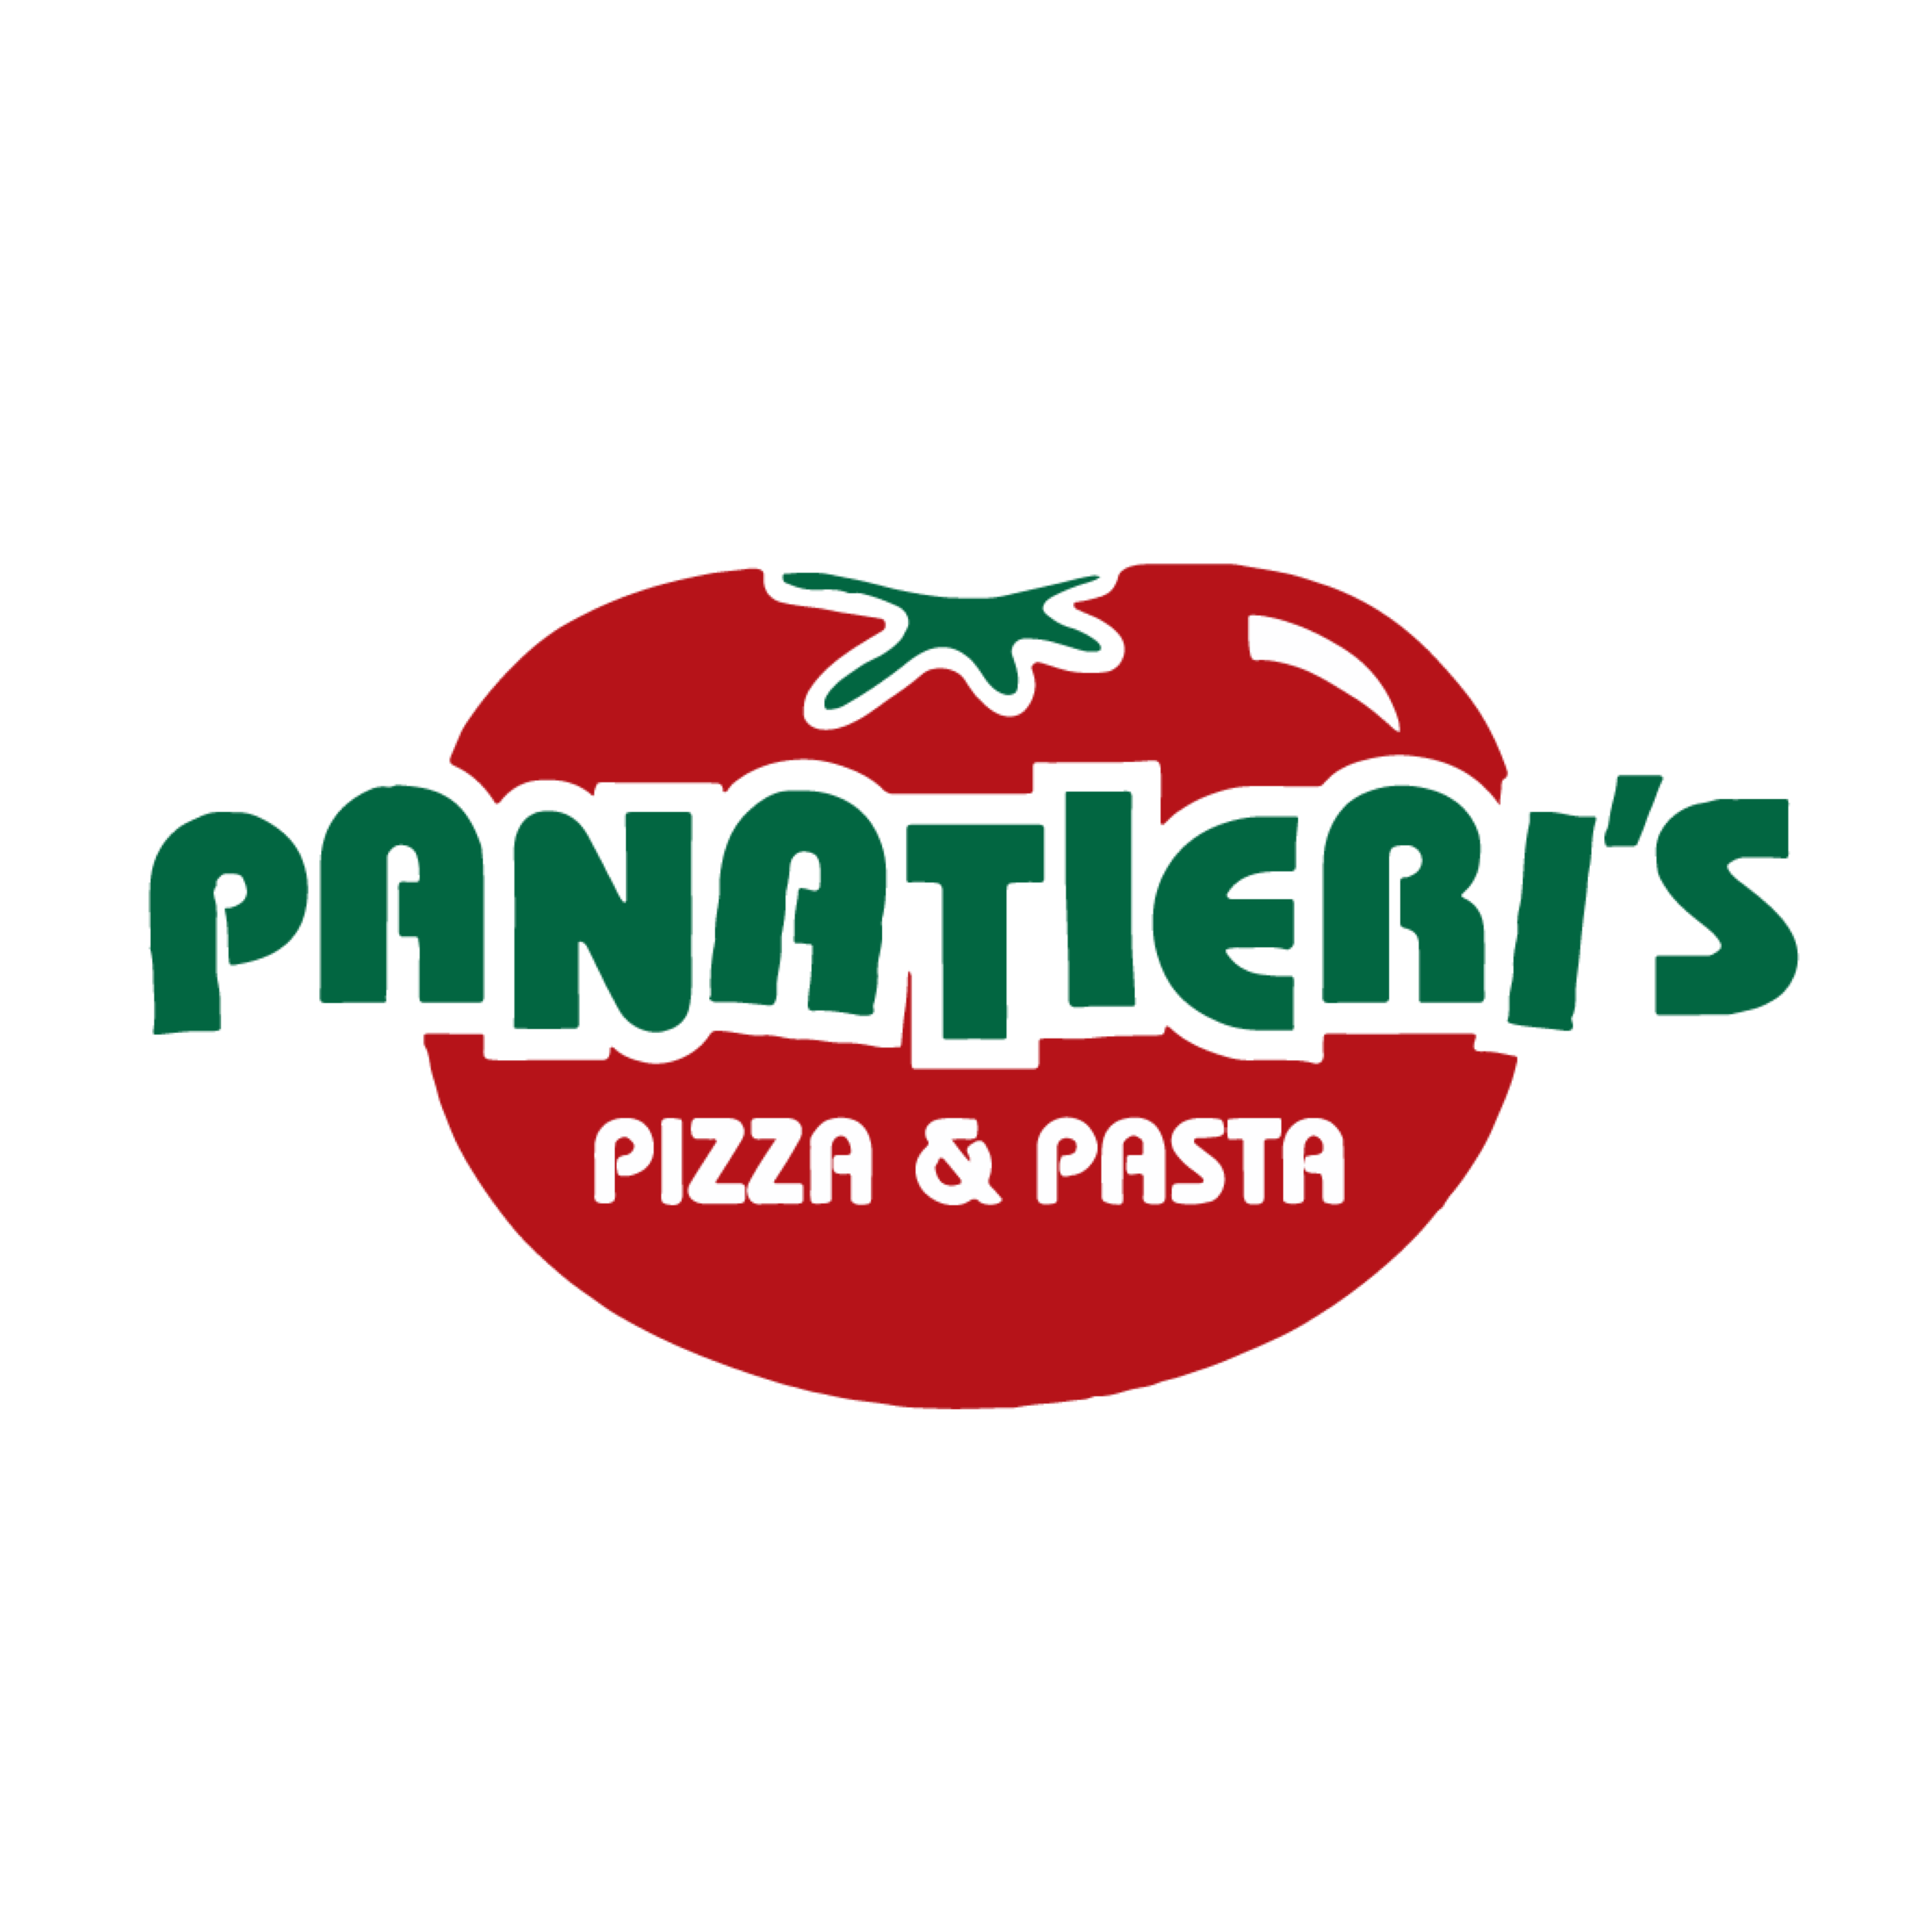 Panatieri's